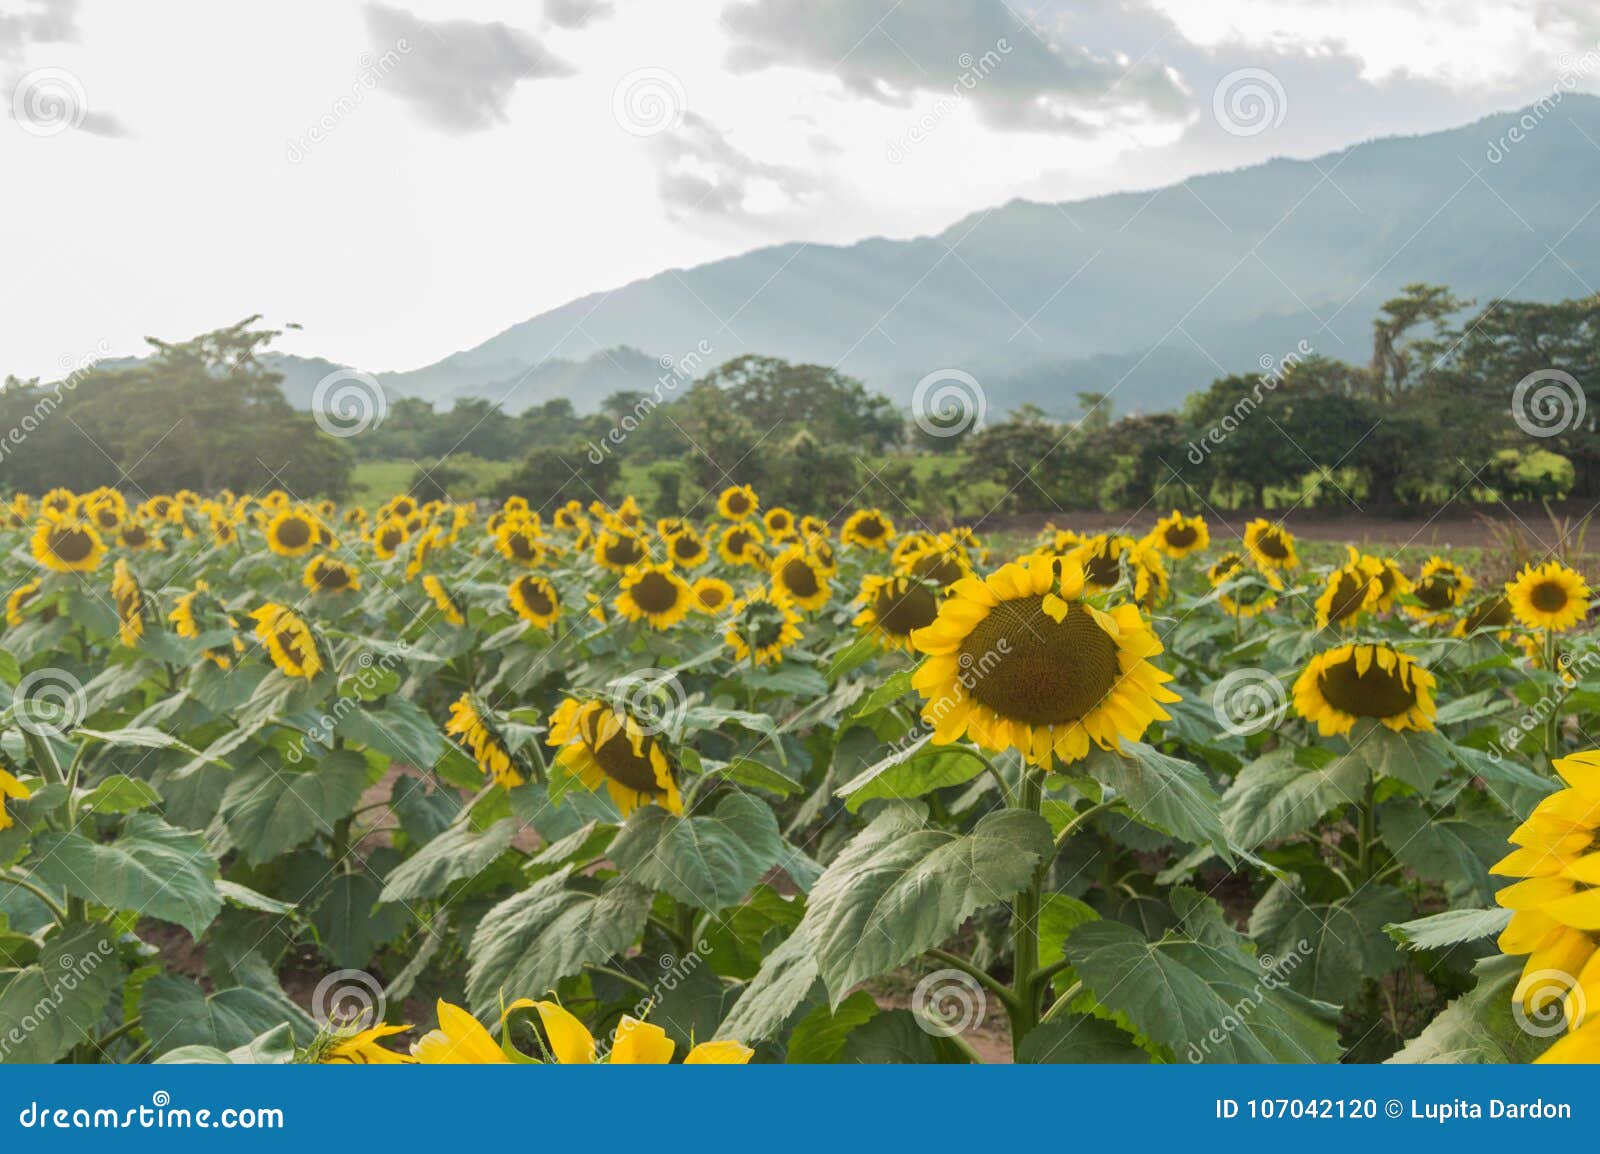 sunflowers farm in esquipulas.